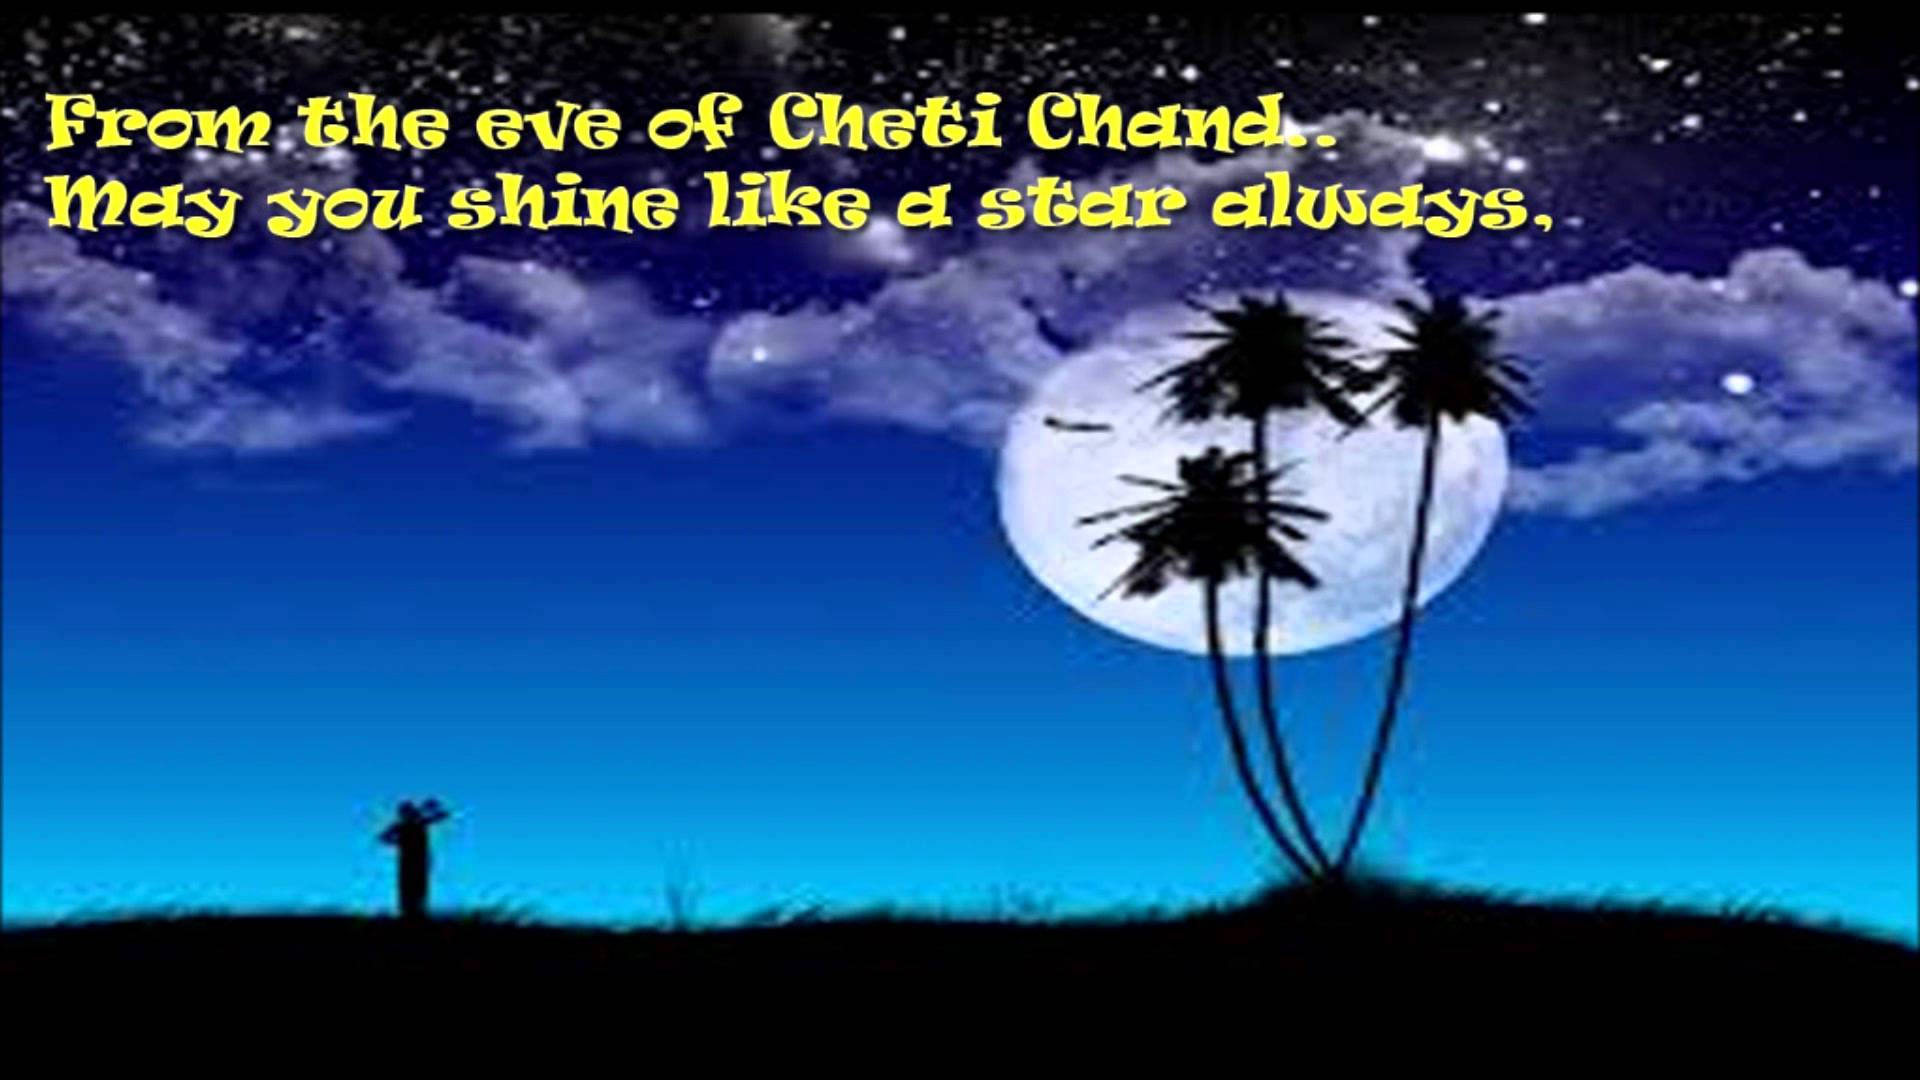 Cheti Chand Wishes 2018